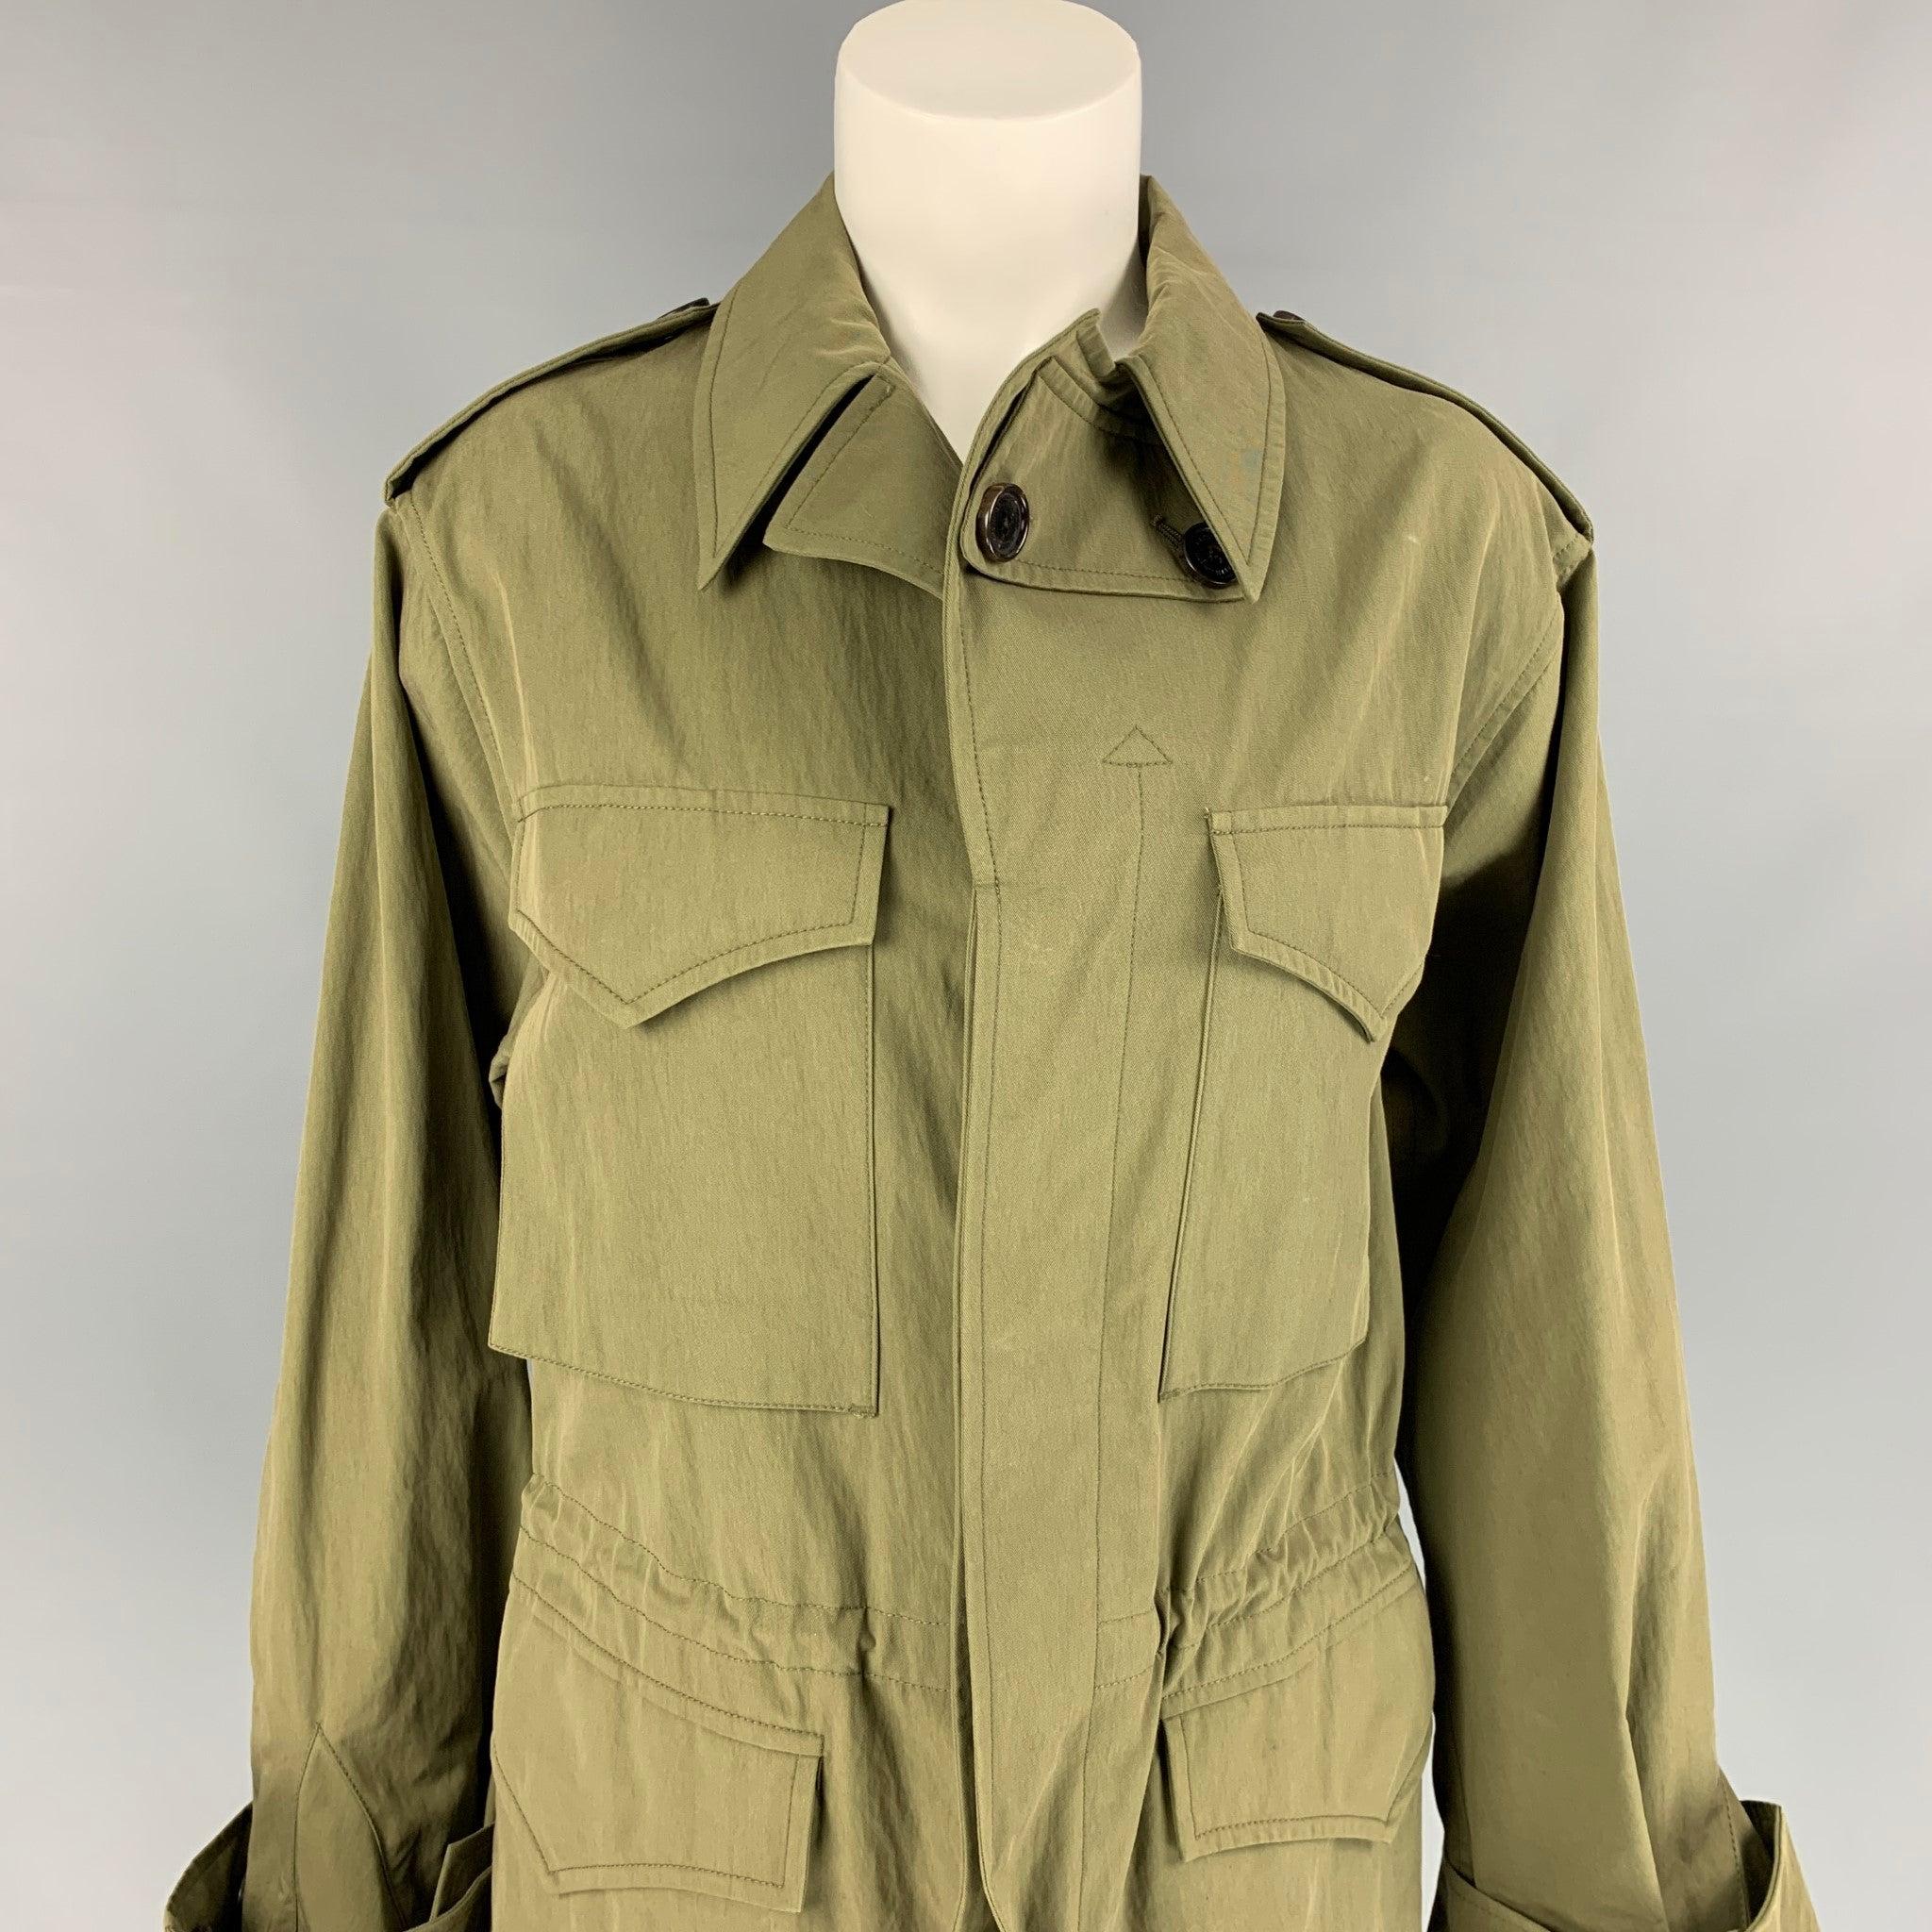 Le trench-coat de la Collection S de RALPH LAUREN est en coton/nylon olive et présente un style safari, des cordons de serrage, des épaulettes, des poches à rabat et une patte de boutonnage cachée. Fabriquées en Italie.
Excellent
Etat d'occasion.